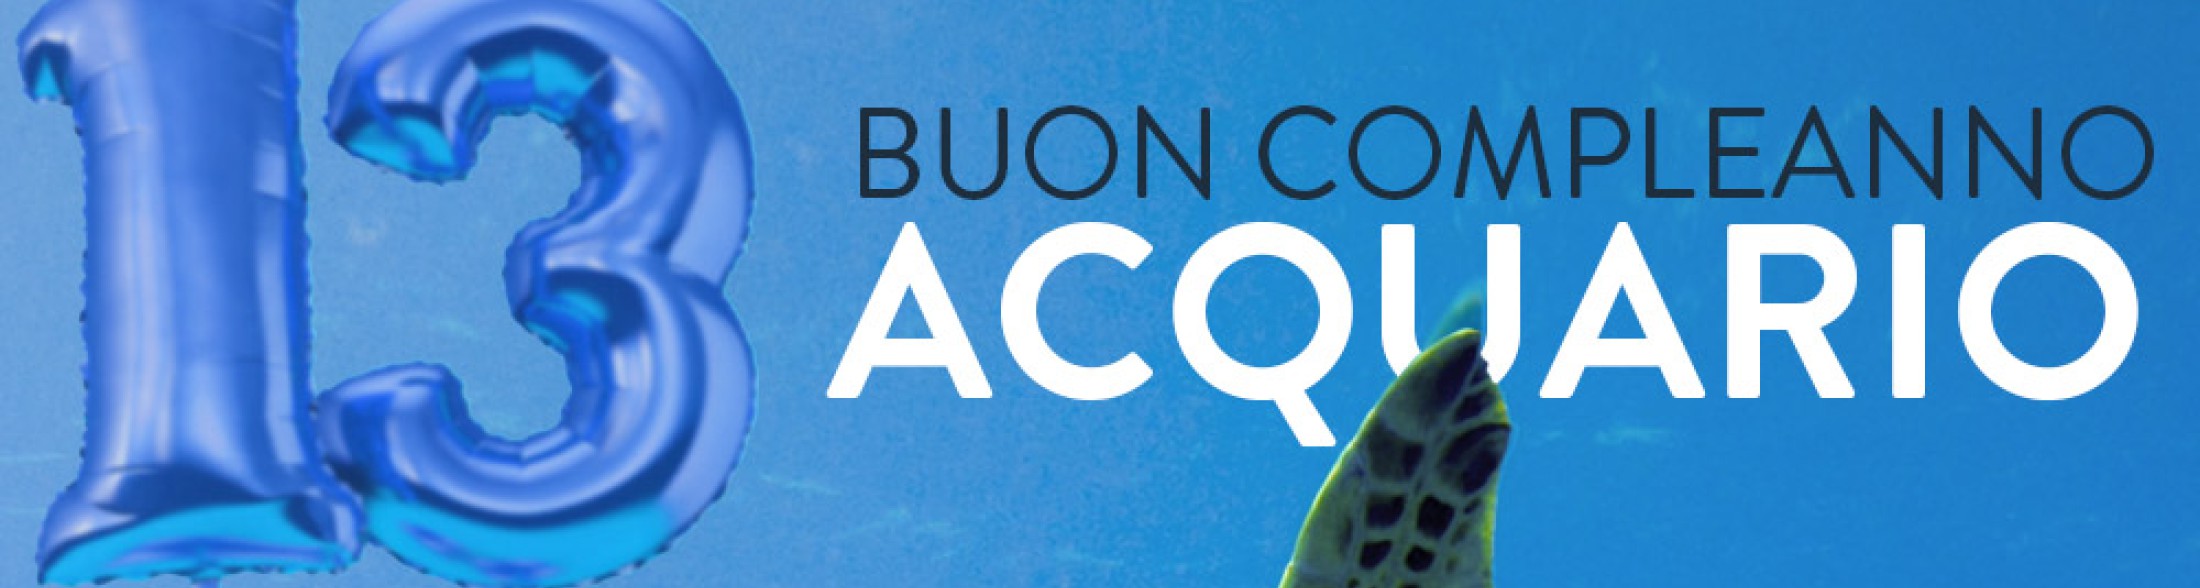 L'Acquario di Livorno festeggia il 13° compleanno con un ricco programma di iniziative dal 29 luglio al 4 agosto